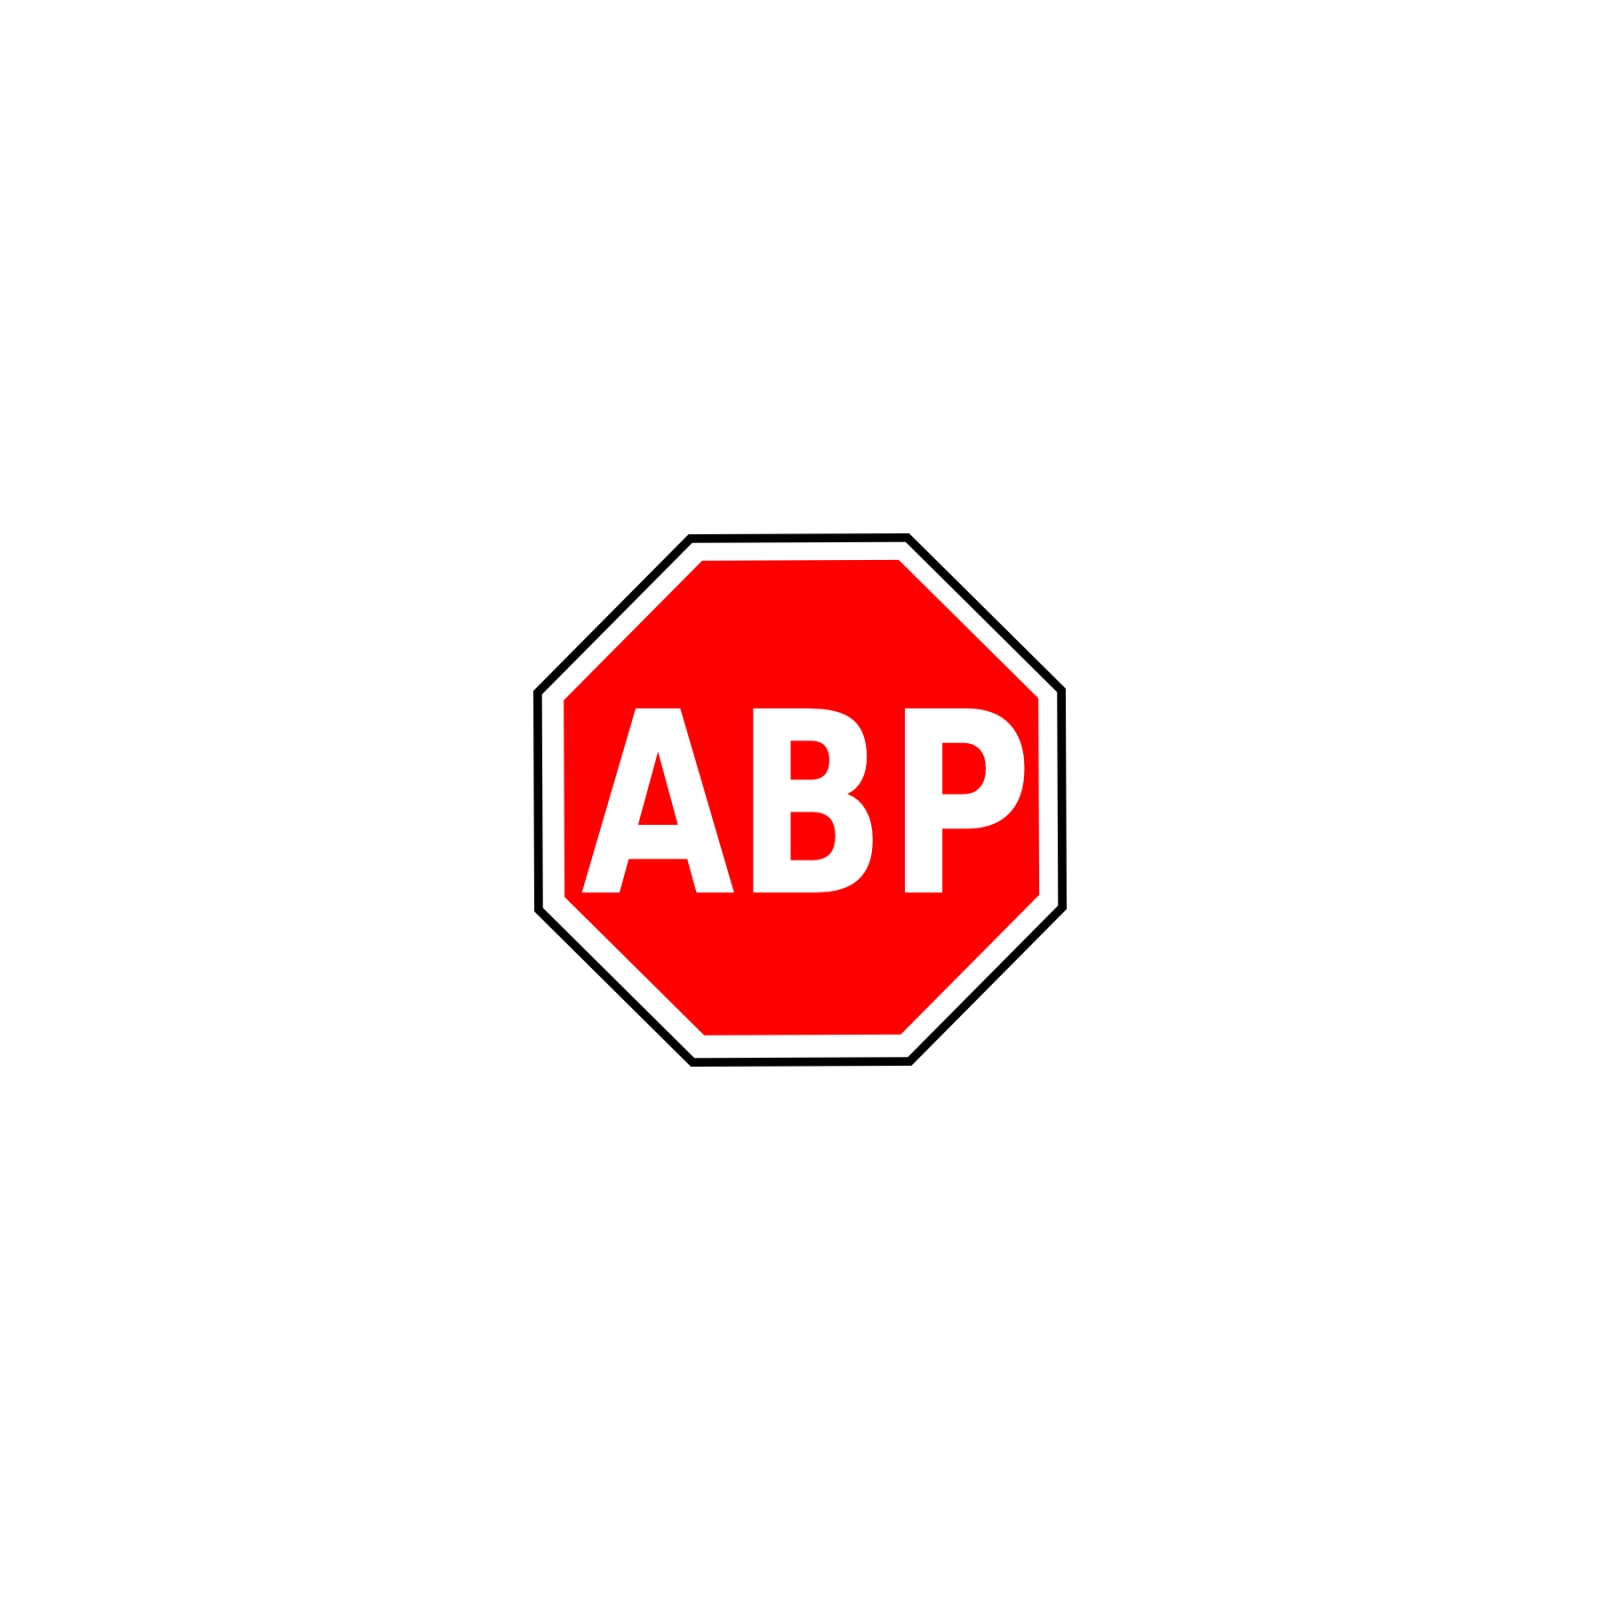 Abc блокировка рекламы. Блокировщик рекламы. ADBLOCK. Значок Адблока. ABP блокировщик рекламы.